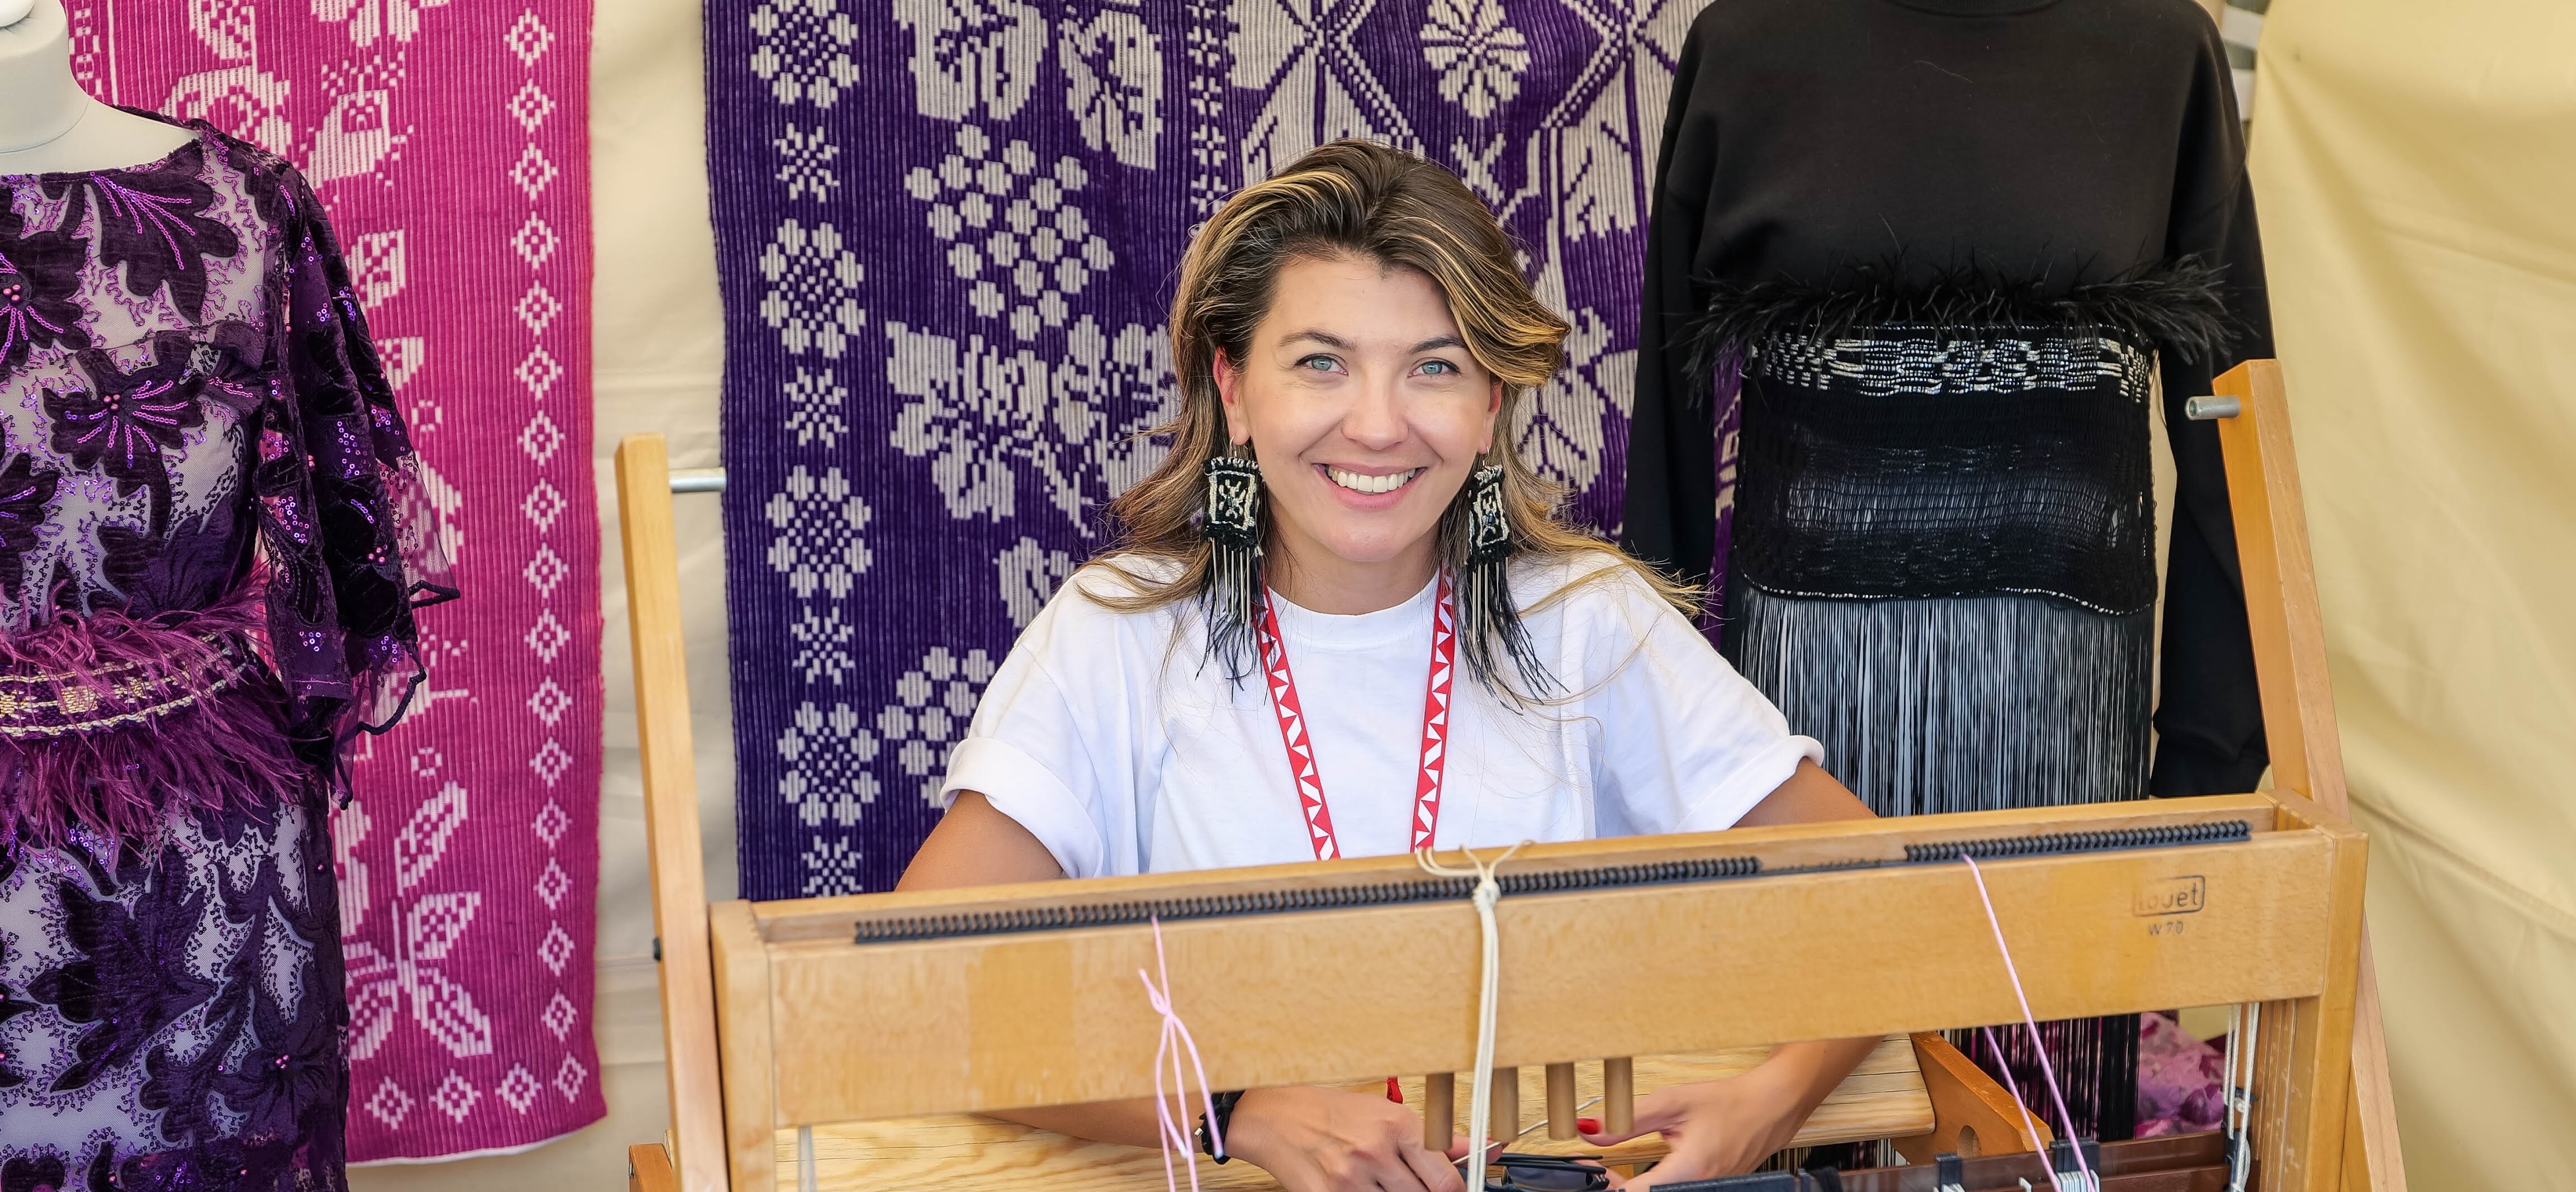 Uśmiechnięta kobieta siedzi za maszyną tkacką